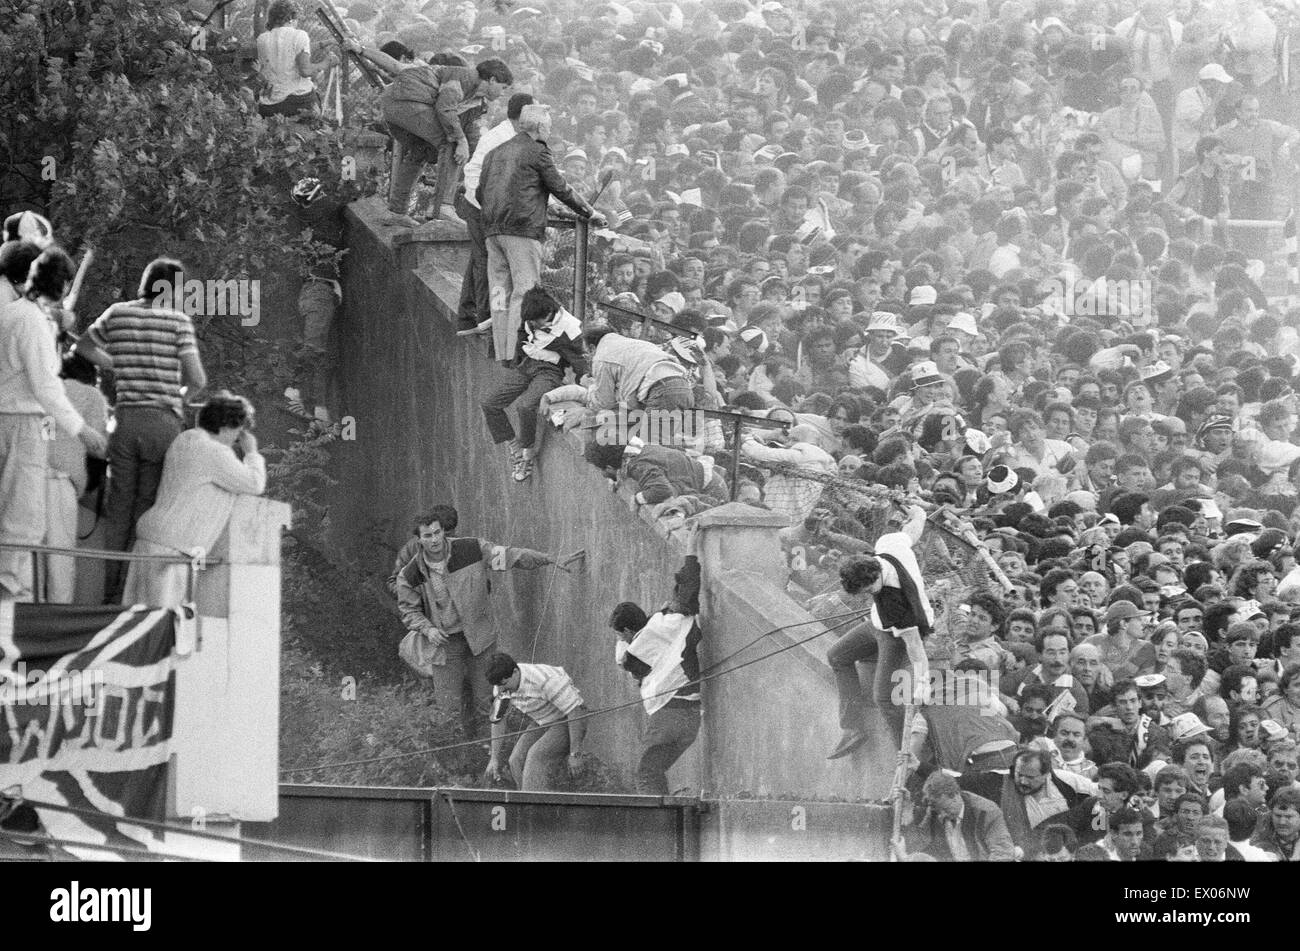 Attenzione : il contenuto grafico Juventus v Liverpool, 1985 European Cup Final, Heysel Stadium, Bruxelles, mercoledì 29 maggio 1985. Heysel Stadium disastro. 39 persone, per la maggior parte tifosi bianconeri, morì quando la fuga dei missili essendo generata da entrambi i gruppi di tifosi in tutta una na Foto Stock